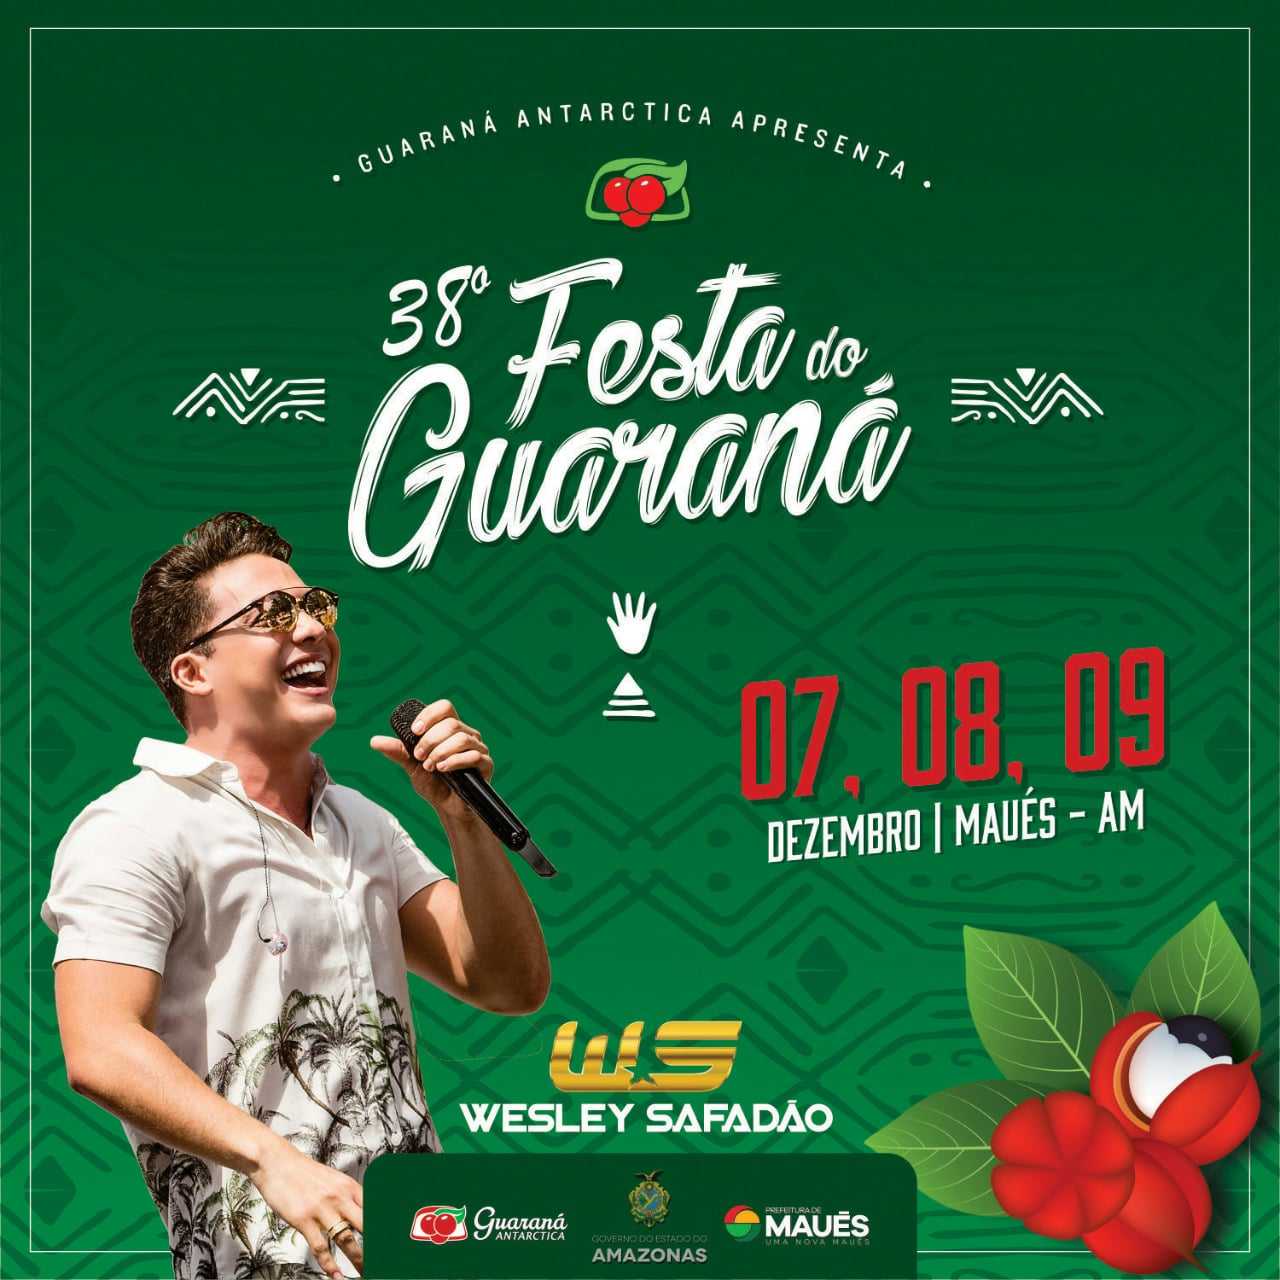 38ª Festa do Guaraná de Maués, na Amazônia, terá Wesley Safadão como atração principal